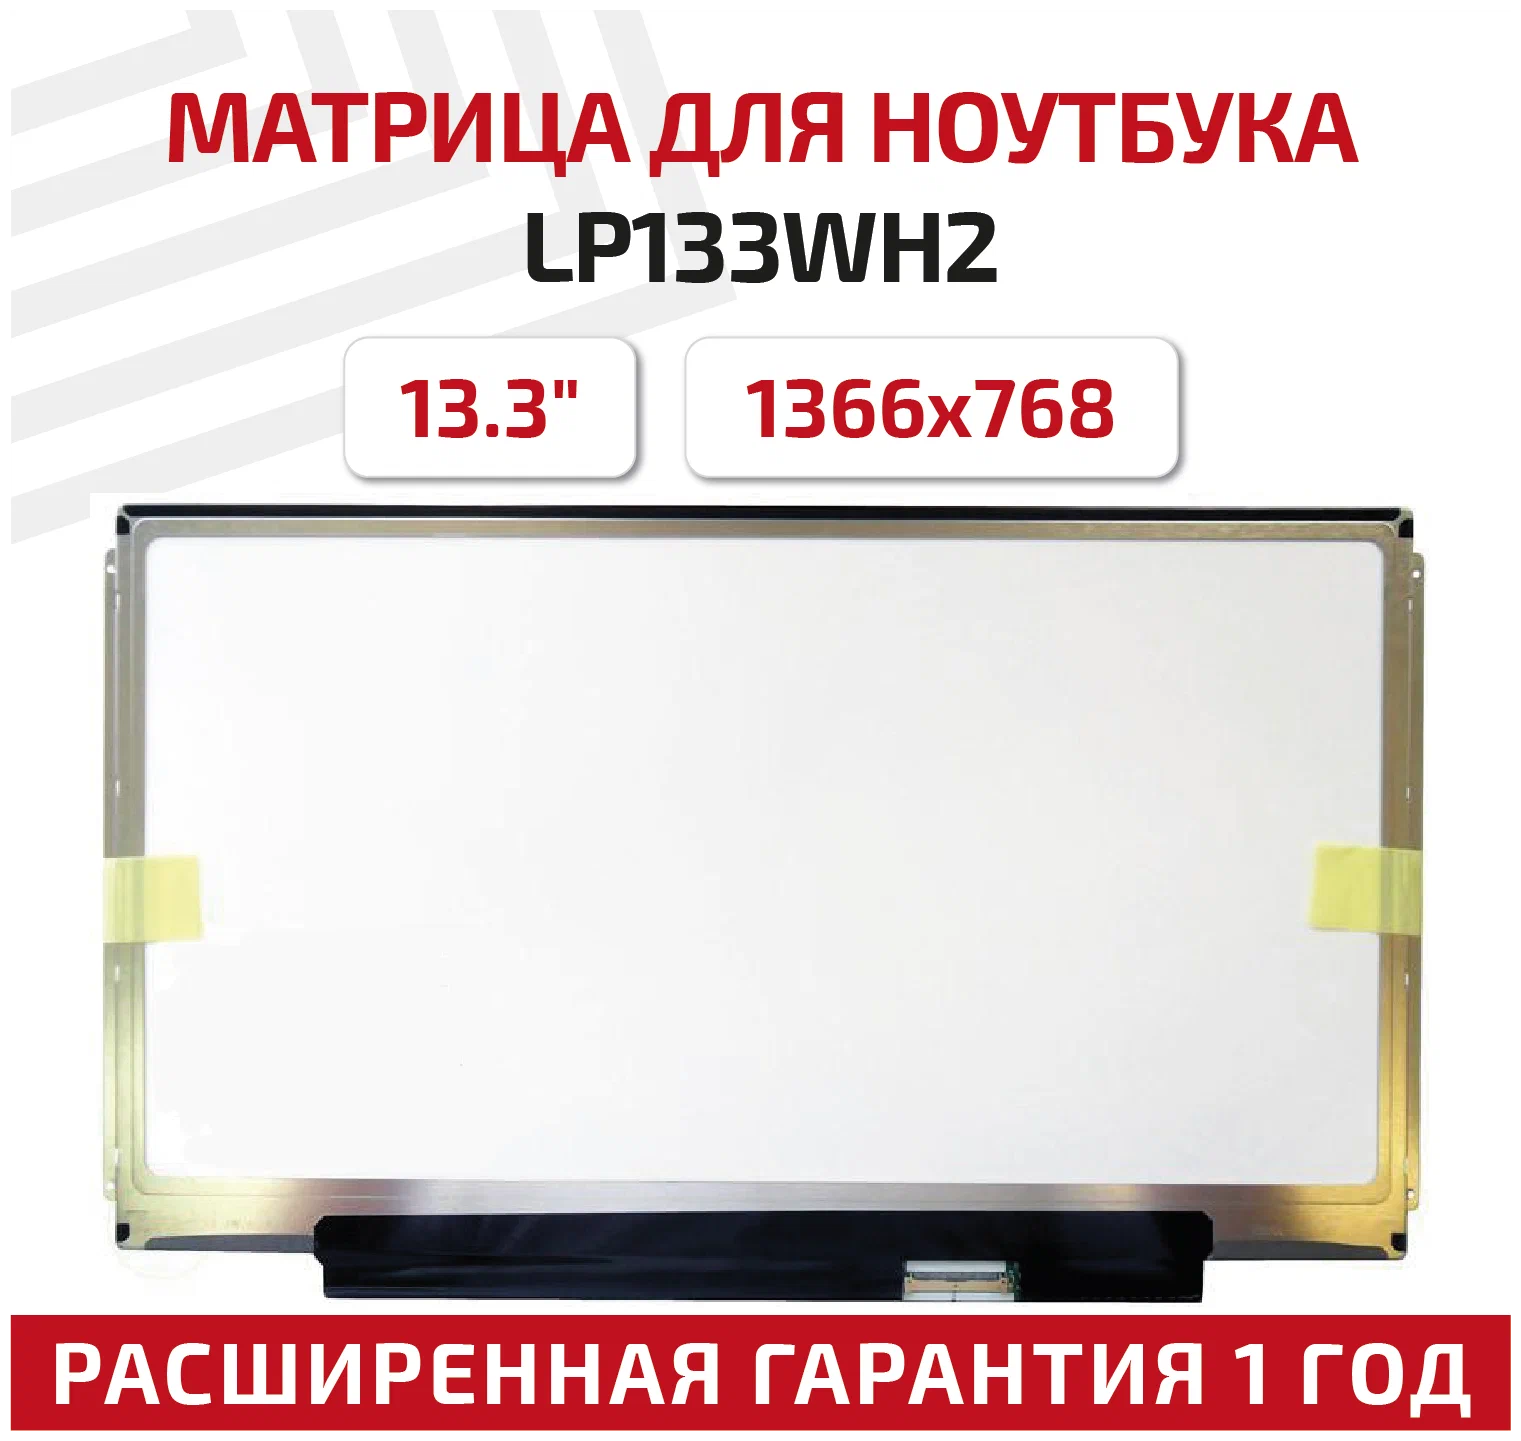 Матрица для ноутбука Б/У 13.3" LP133WH2 TL L3 <LED/глянцевая>